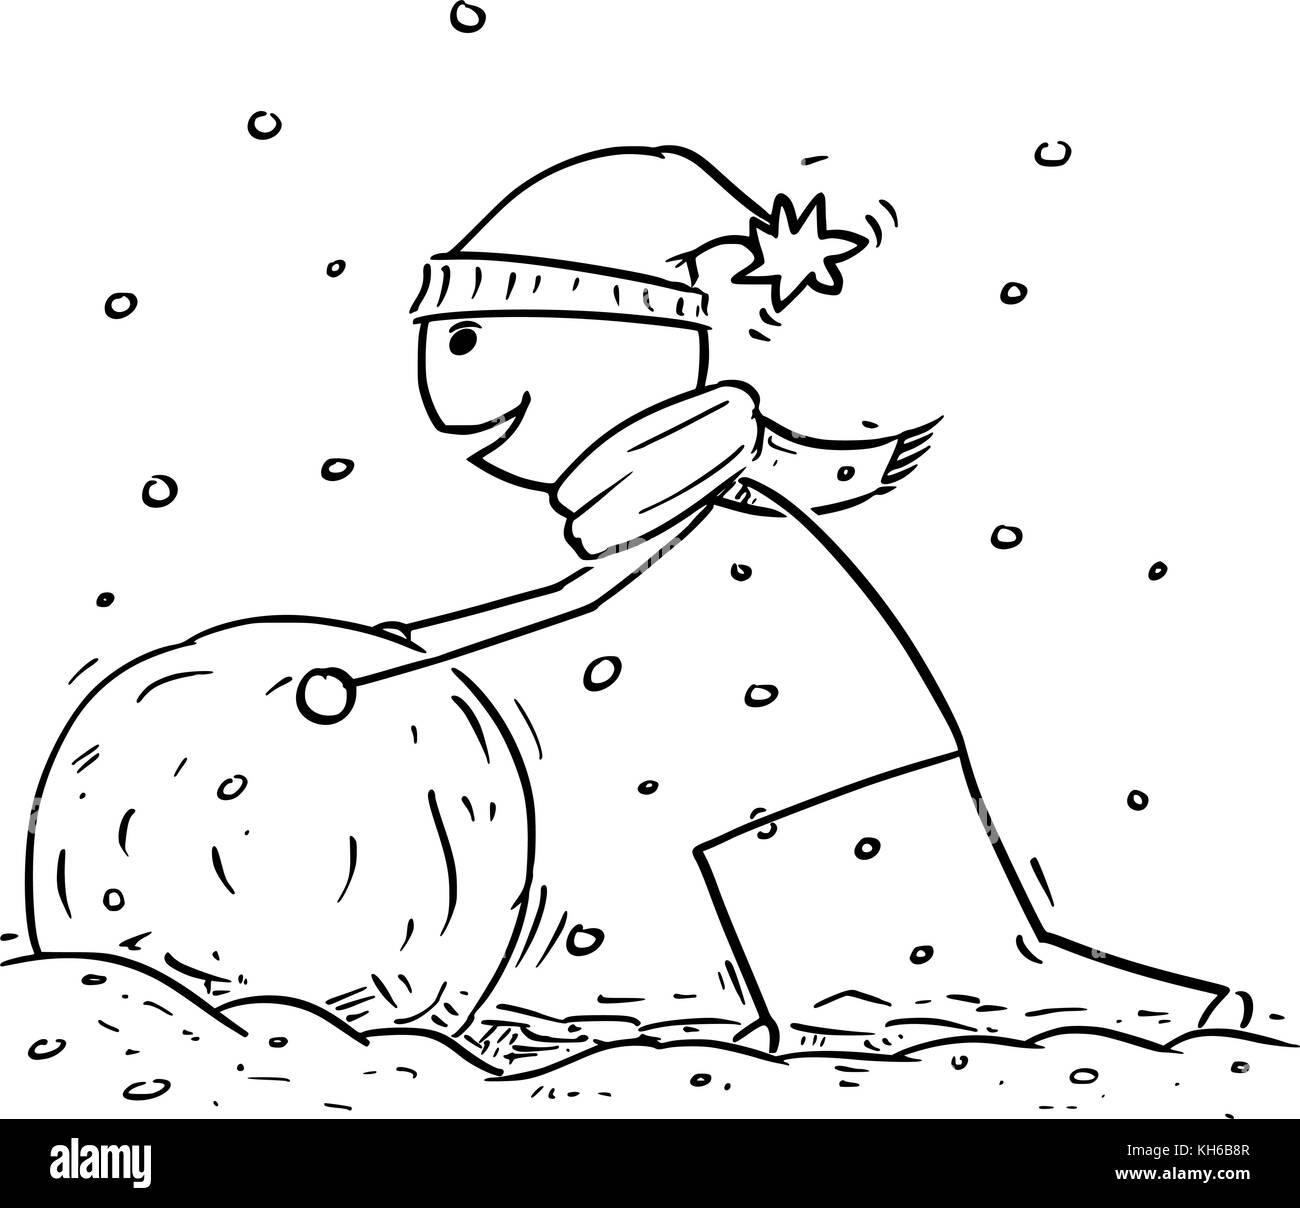 Cartoon stick uomo disegno illustrativo dell'uomo facendo grandi per le palle di neve pupazzo di neve durante nevicate invernali. Illustrazione Vettoriale